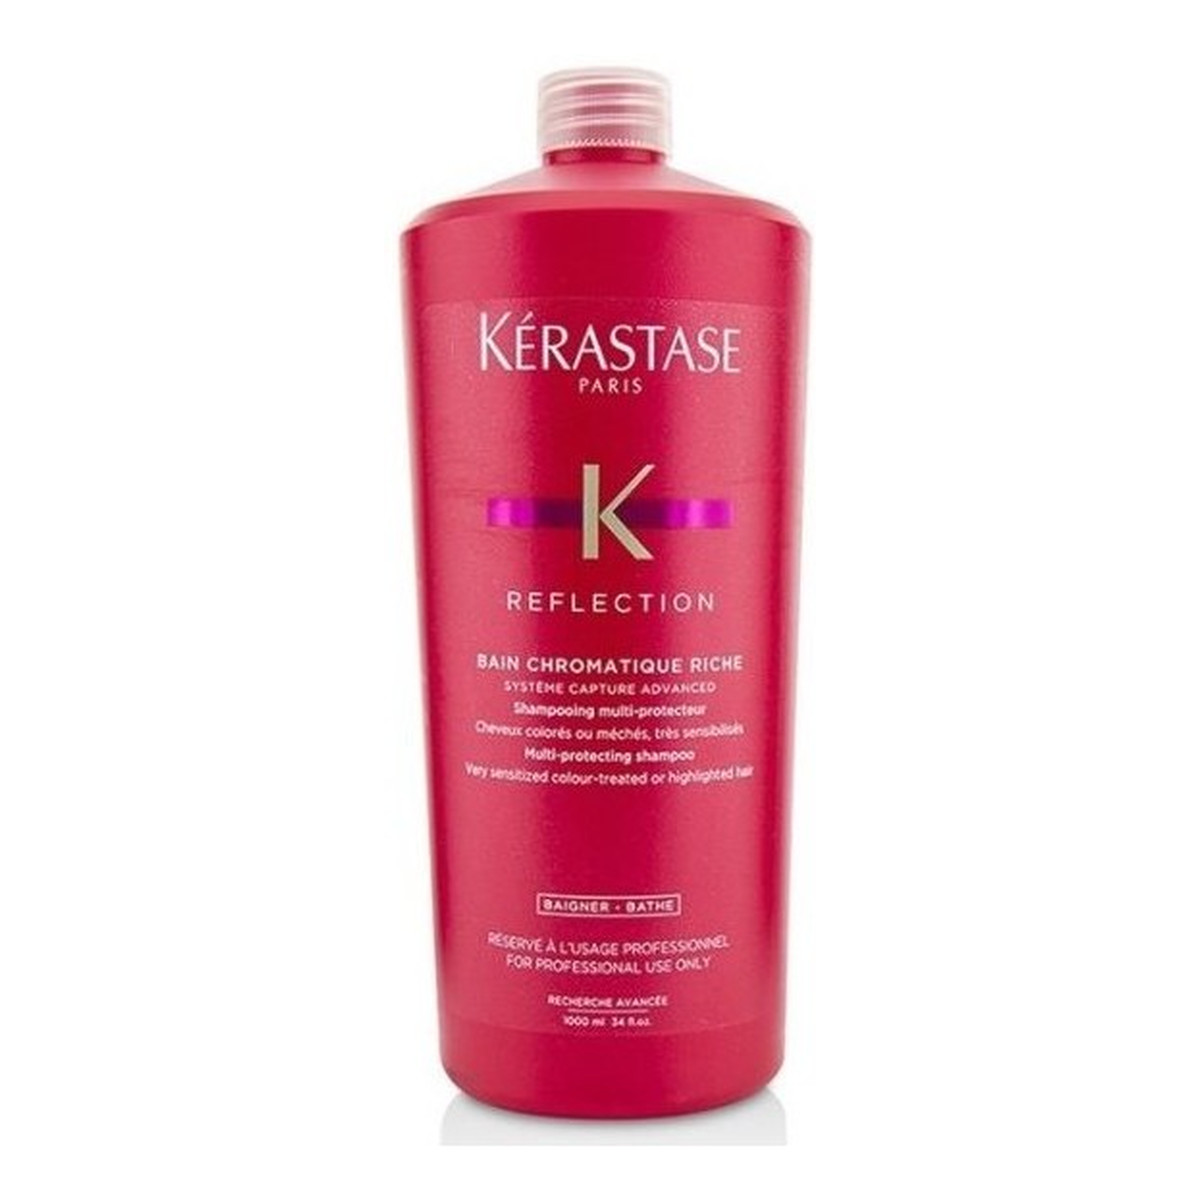 Kerastase Reflection Bain Chromatique Riche Multi-Protecting Shampoo Szampon do włosów farbowanych lub z pasemkami 1000ml